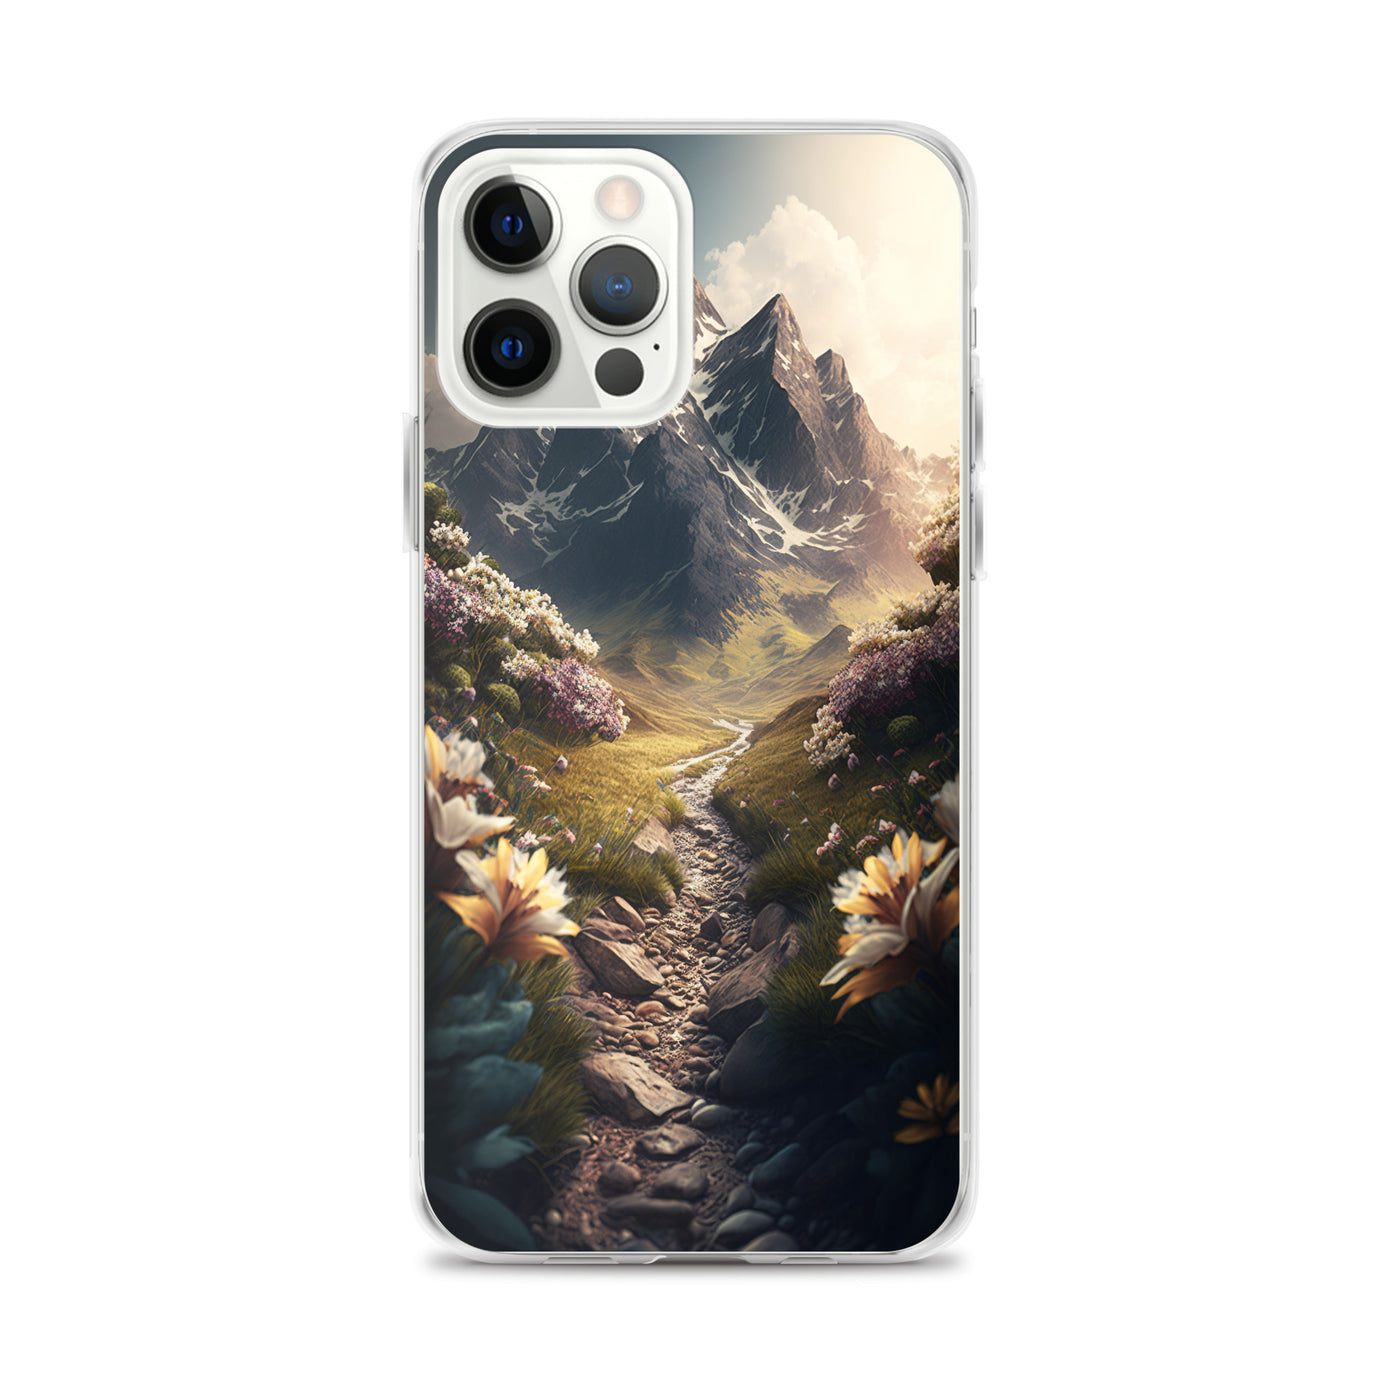 Epischer Berg, steiniger Weg und Blumen - Realistische Malerei - iPhone Schutzhülle (durchsichtig) berge xxx iPhone 12 Pro Max